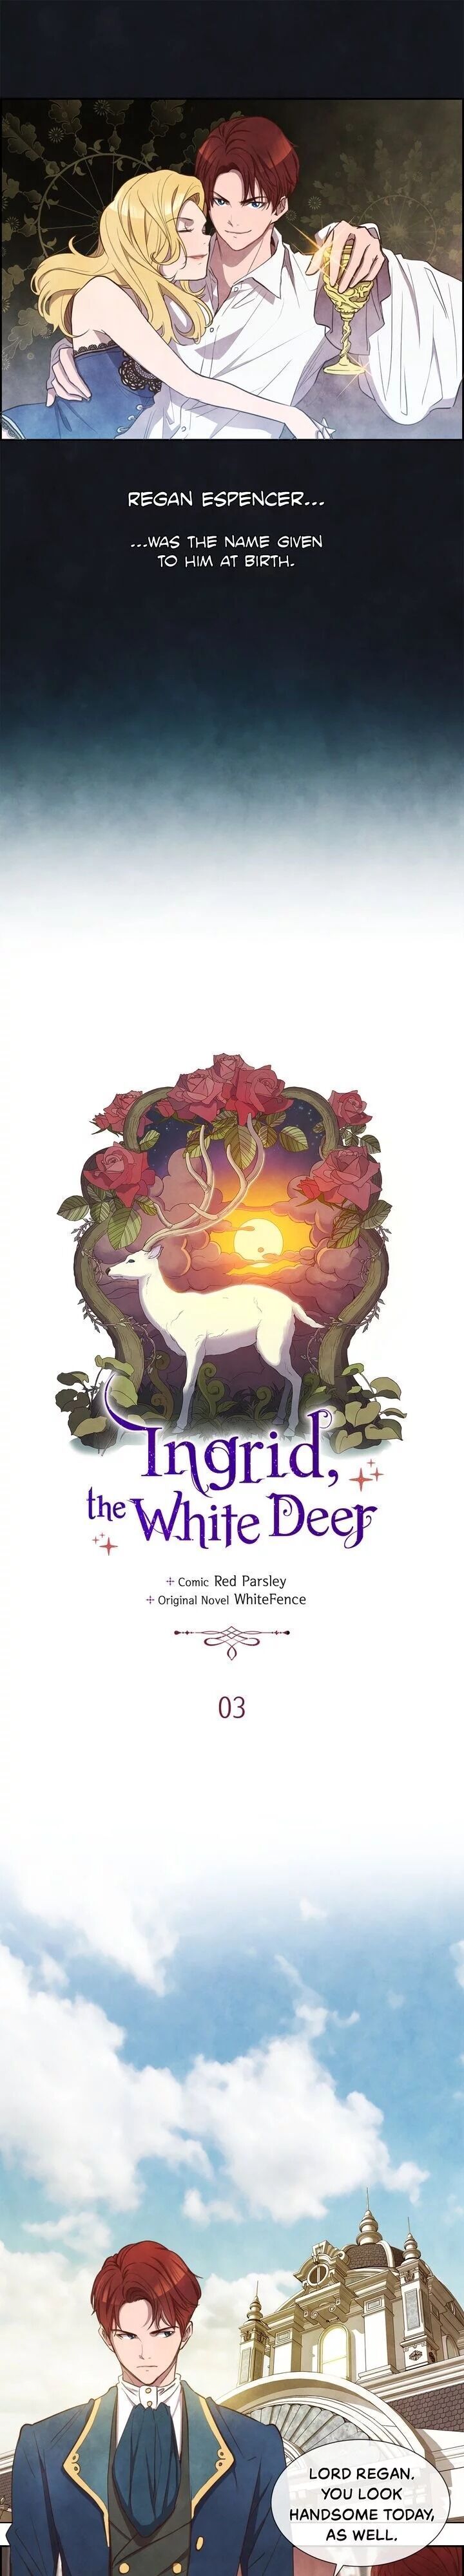 White Deer Ingrid! Chapter 003 page 4